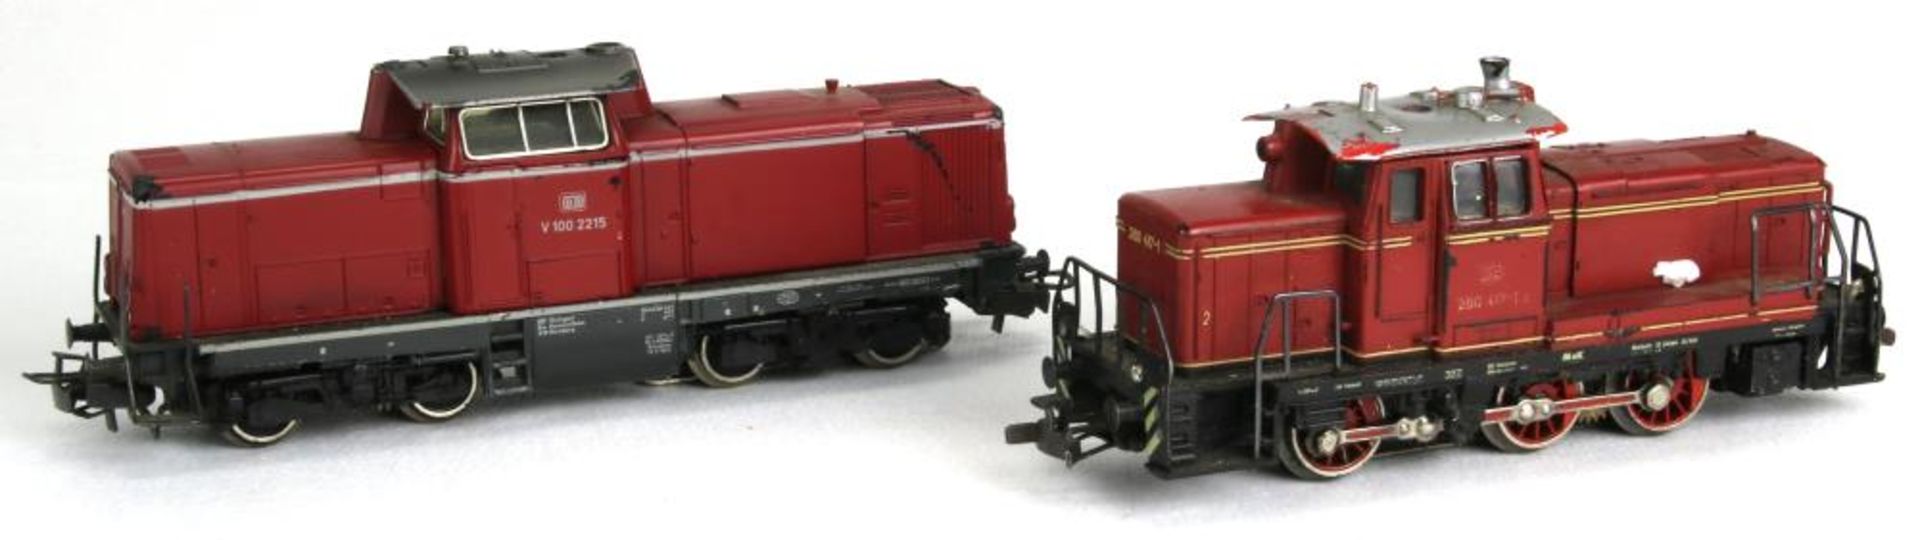 Zwei Diesel-Loks. Märklin H0 3065 (V 100 2215) der DB und 3072 (280 417-1) der DB, beide in OVP. - Bild 2 aus 5